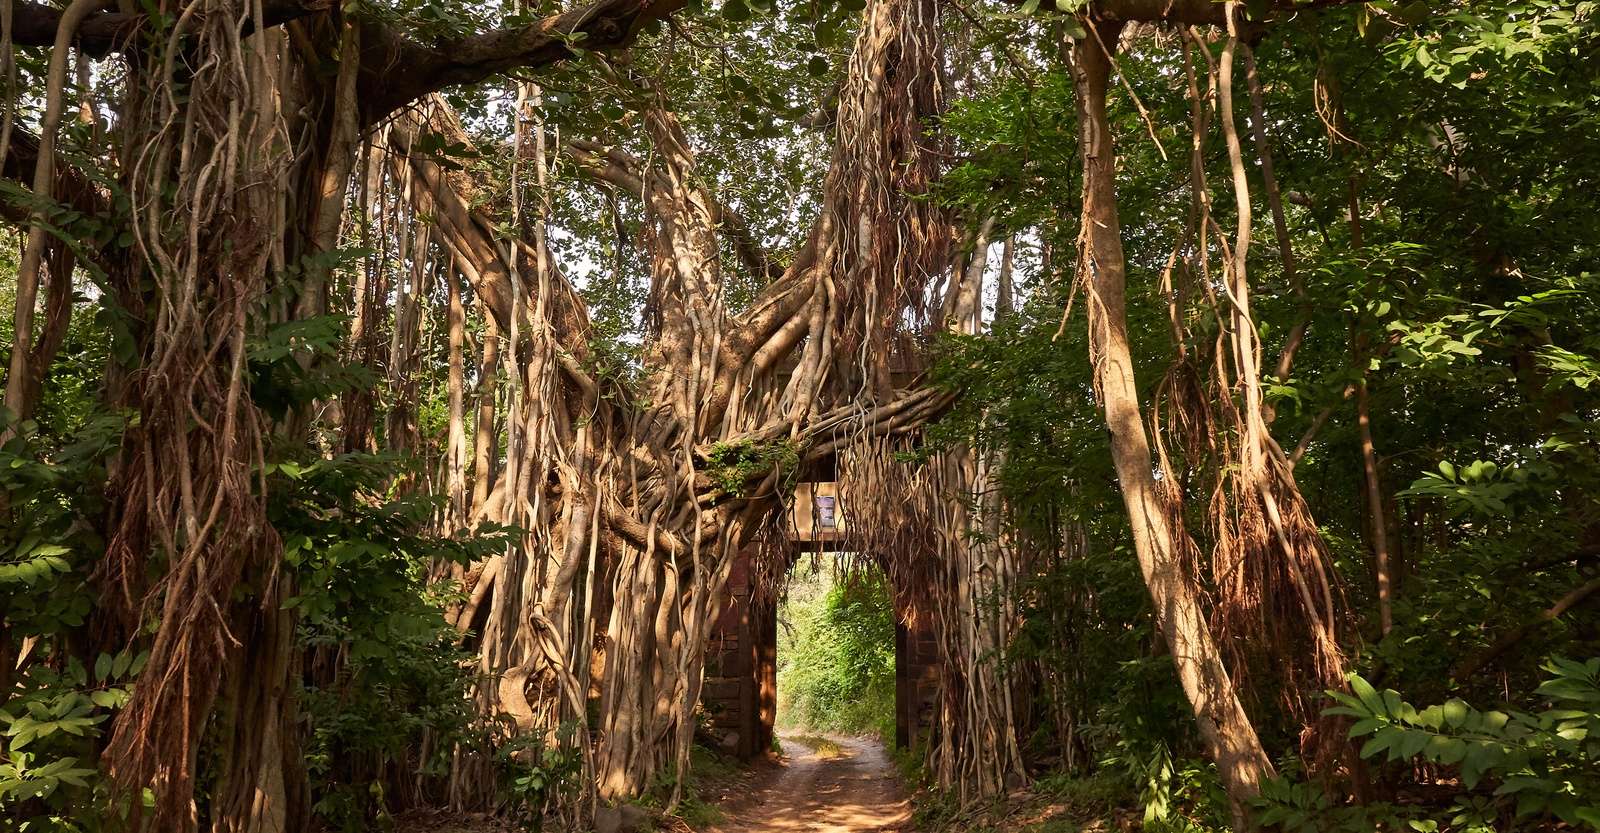 Banyan trees, Ranthambore National Park, India.